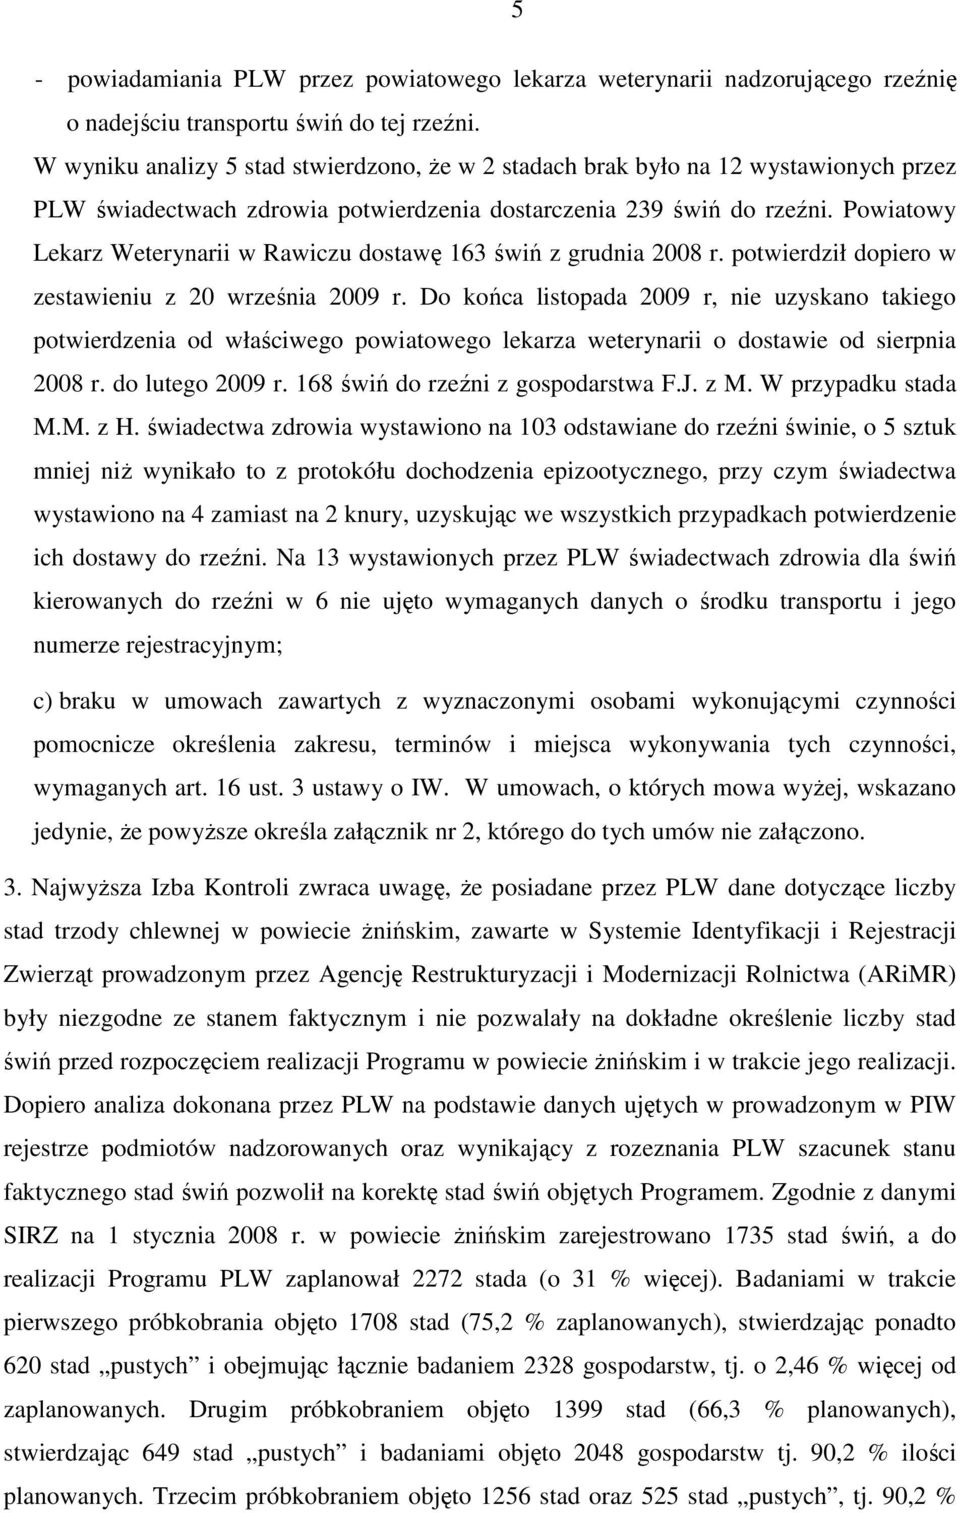 Powiatowy Lekarz Weterynarii w Rawiczu dostawę 163 świń z grudnia 2008 r. potwierdził dopiero w zestawieniu z 20 września 2009 r.